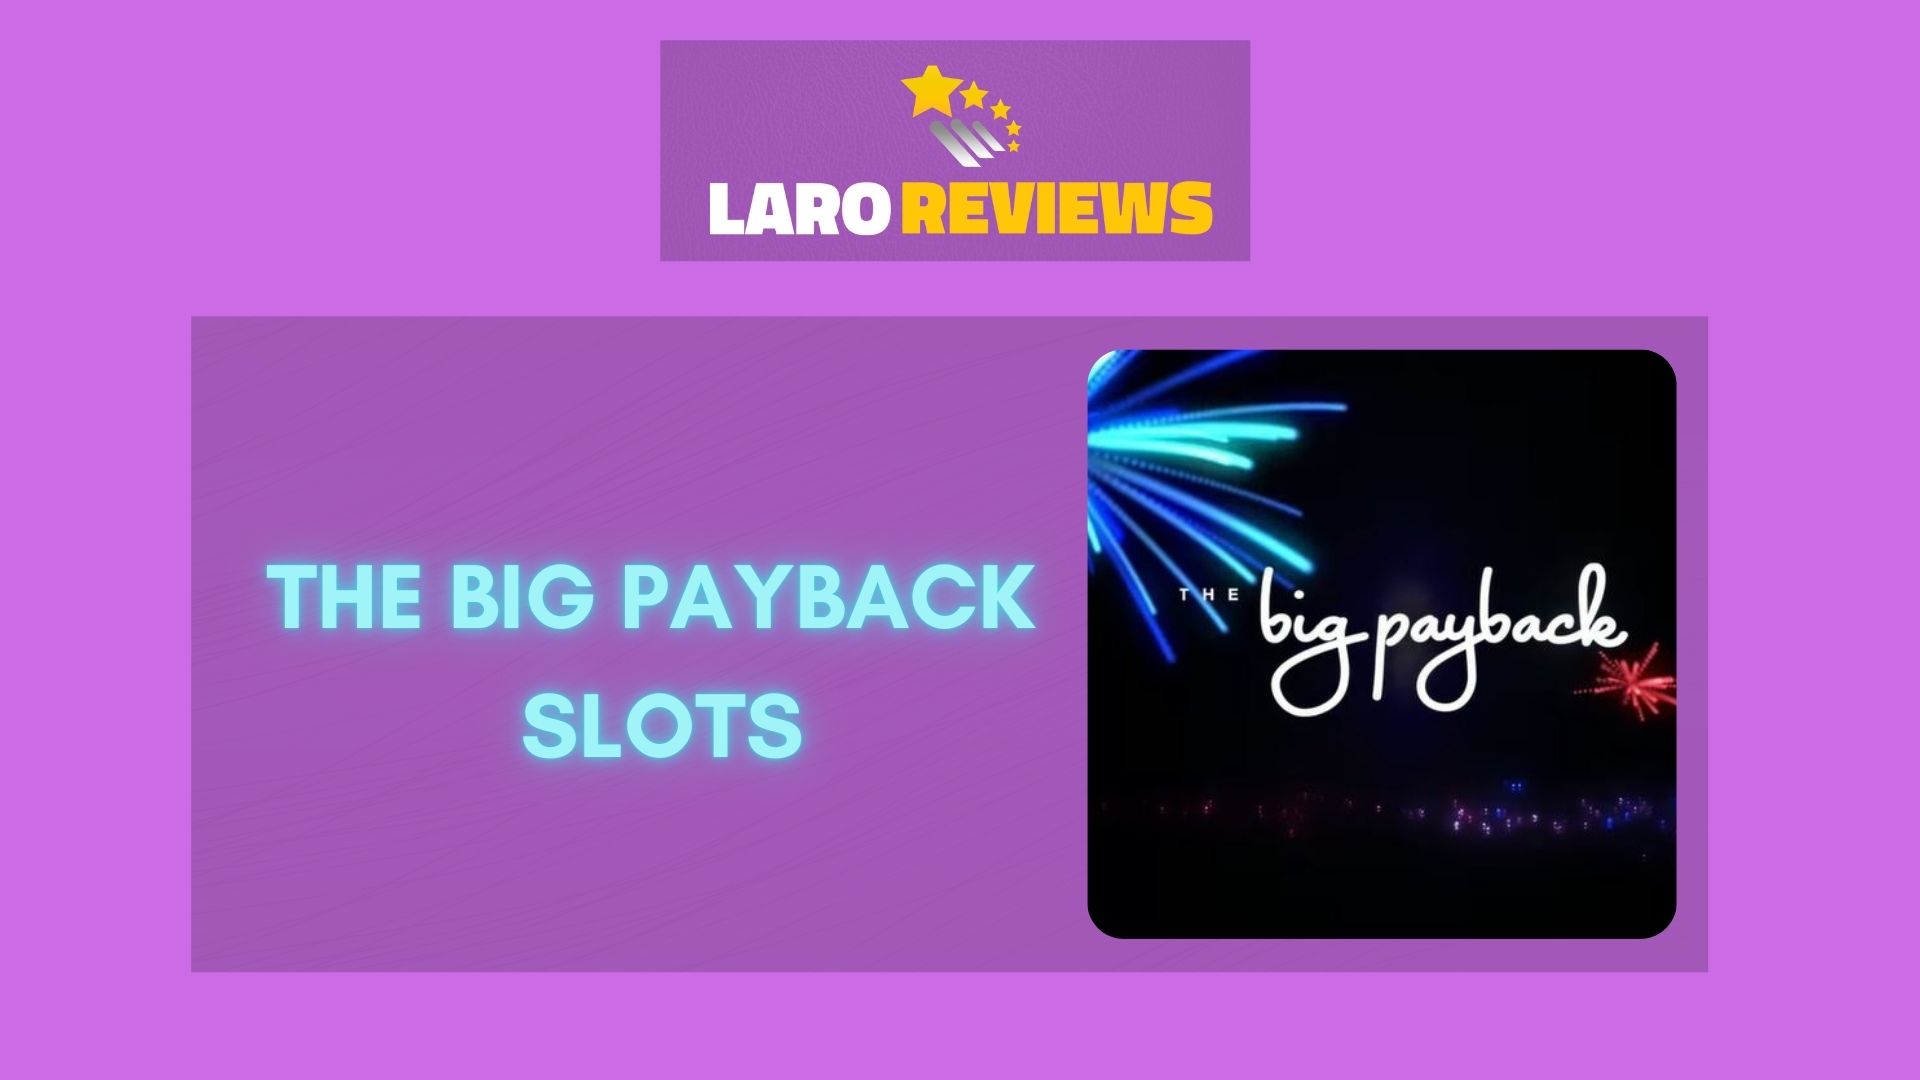 The Big Payback Slots Laro Reviews